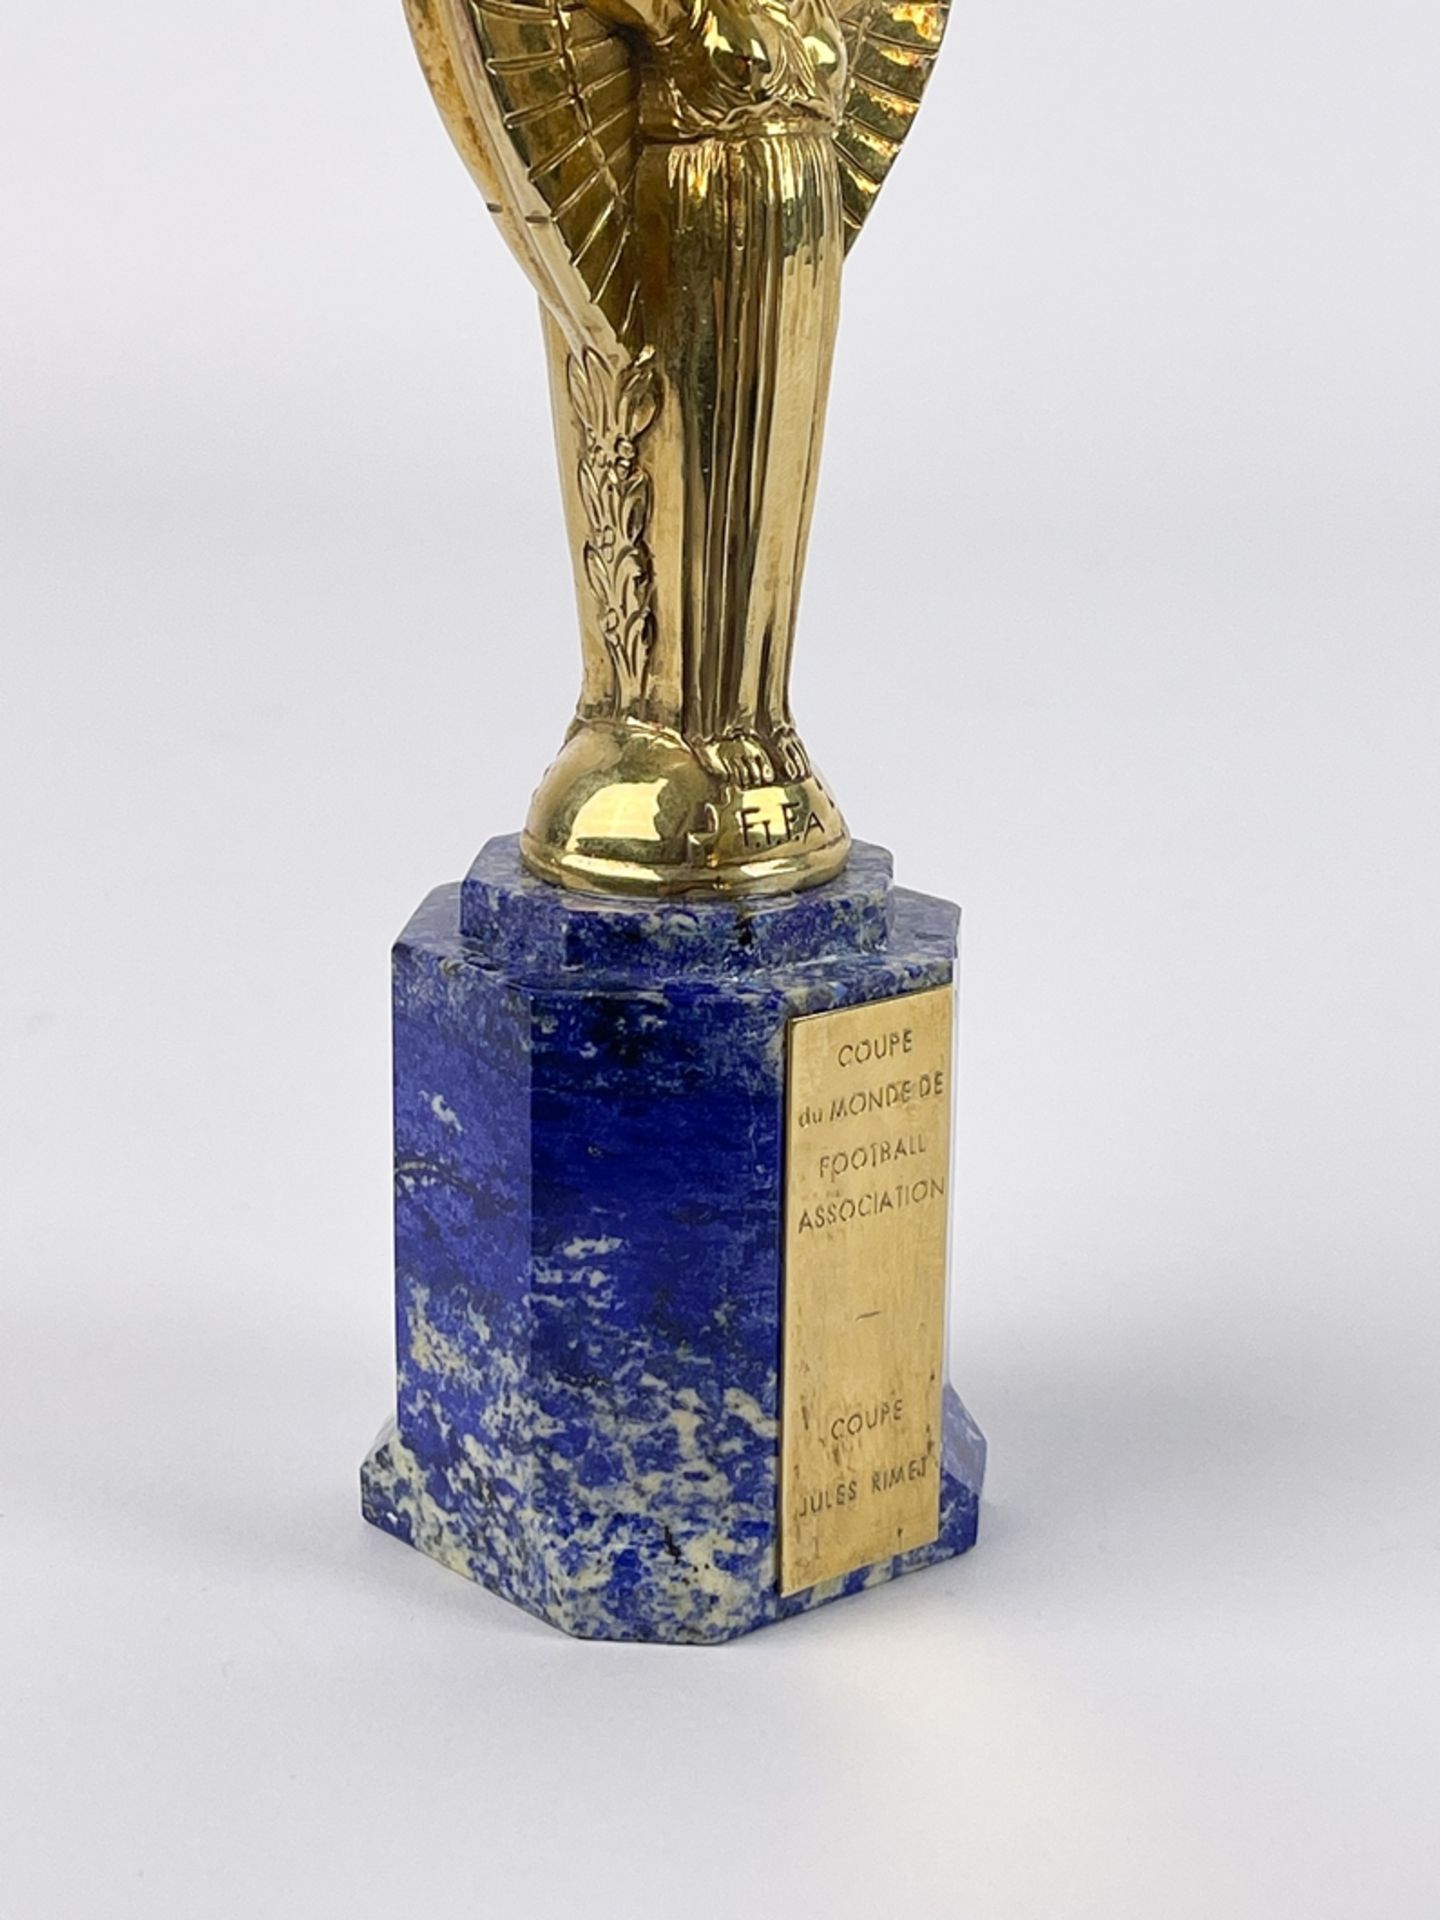 Coupe du Monde de Football Association "Jules Rimet" - Image 8 of 12